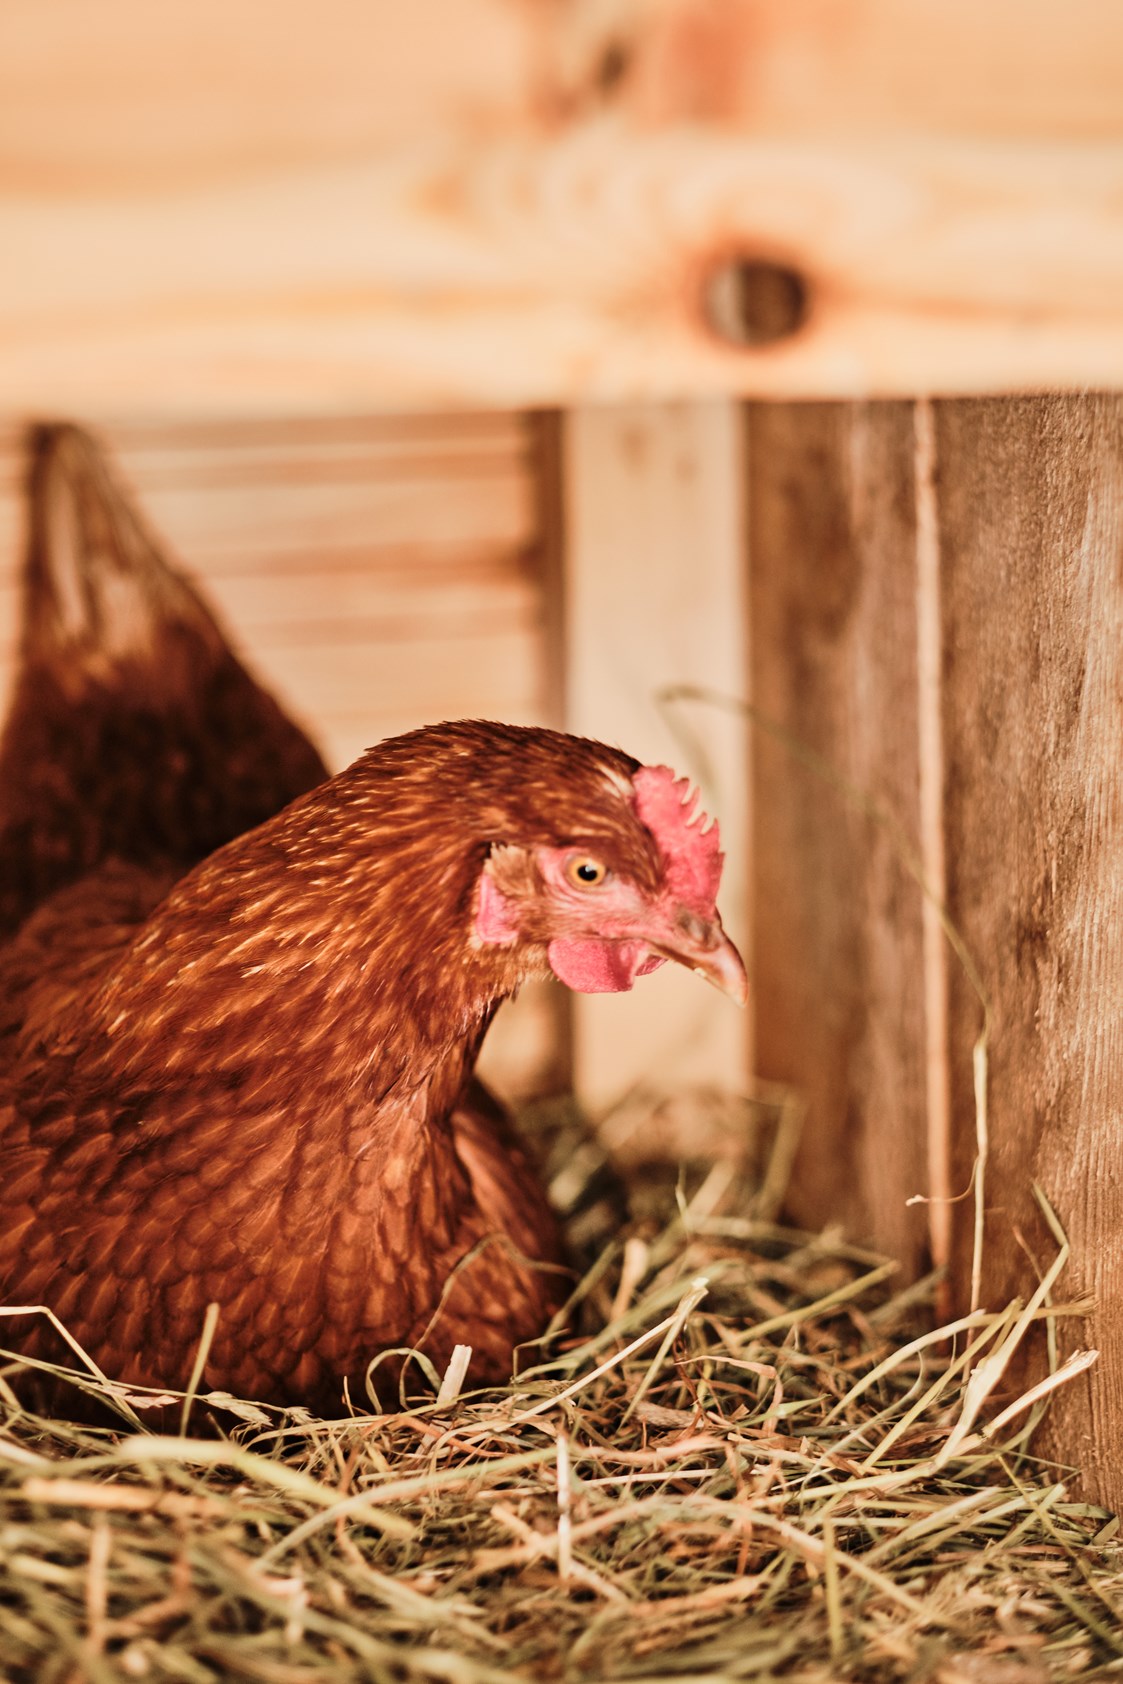 Chalet: Almdorf Hühner - den Sommer dürfen unsere Hühner auf der Alm verbringen. Die frischen Eier kann man sich beim Frühstück schmecken lassen. - Almdorf Omlach, Fanningberg